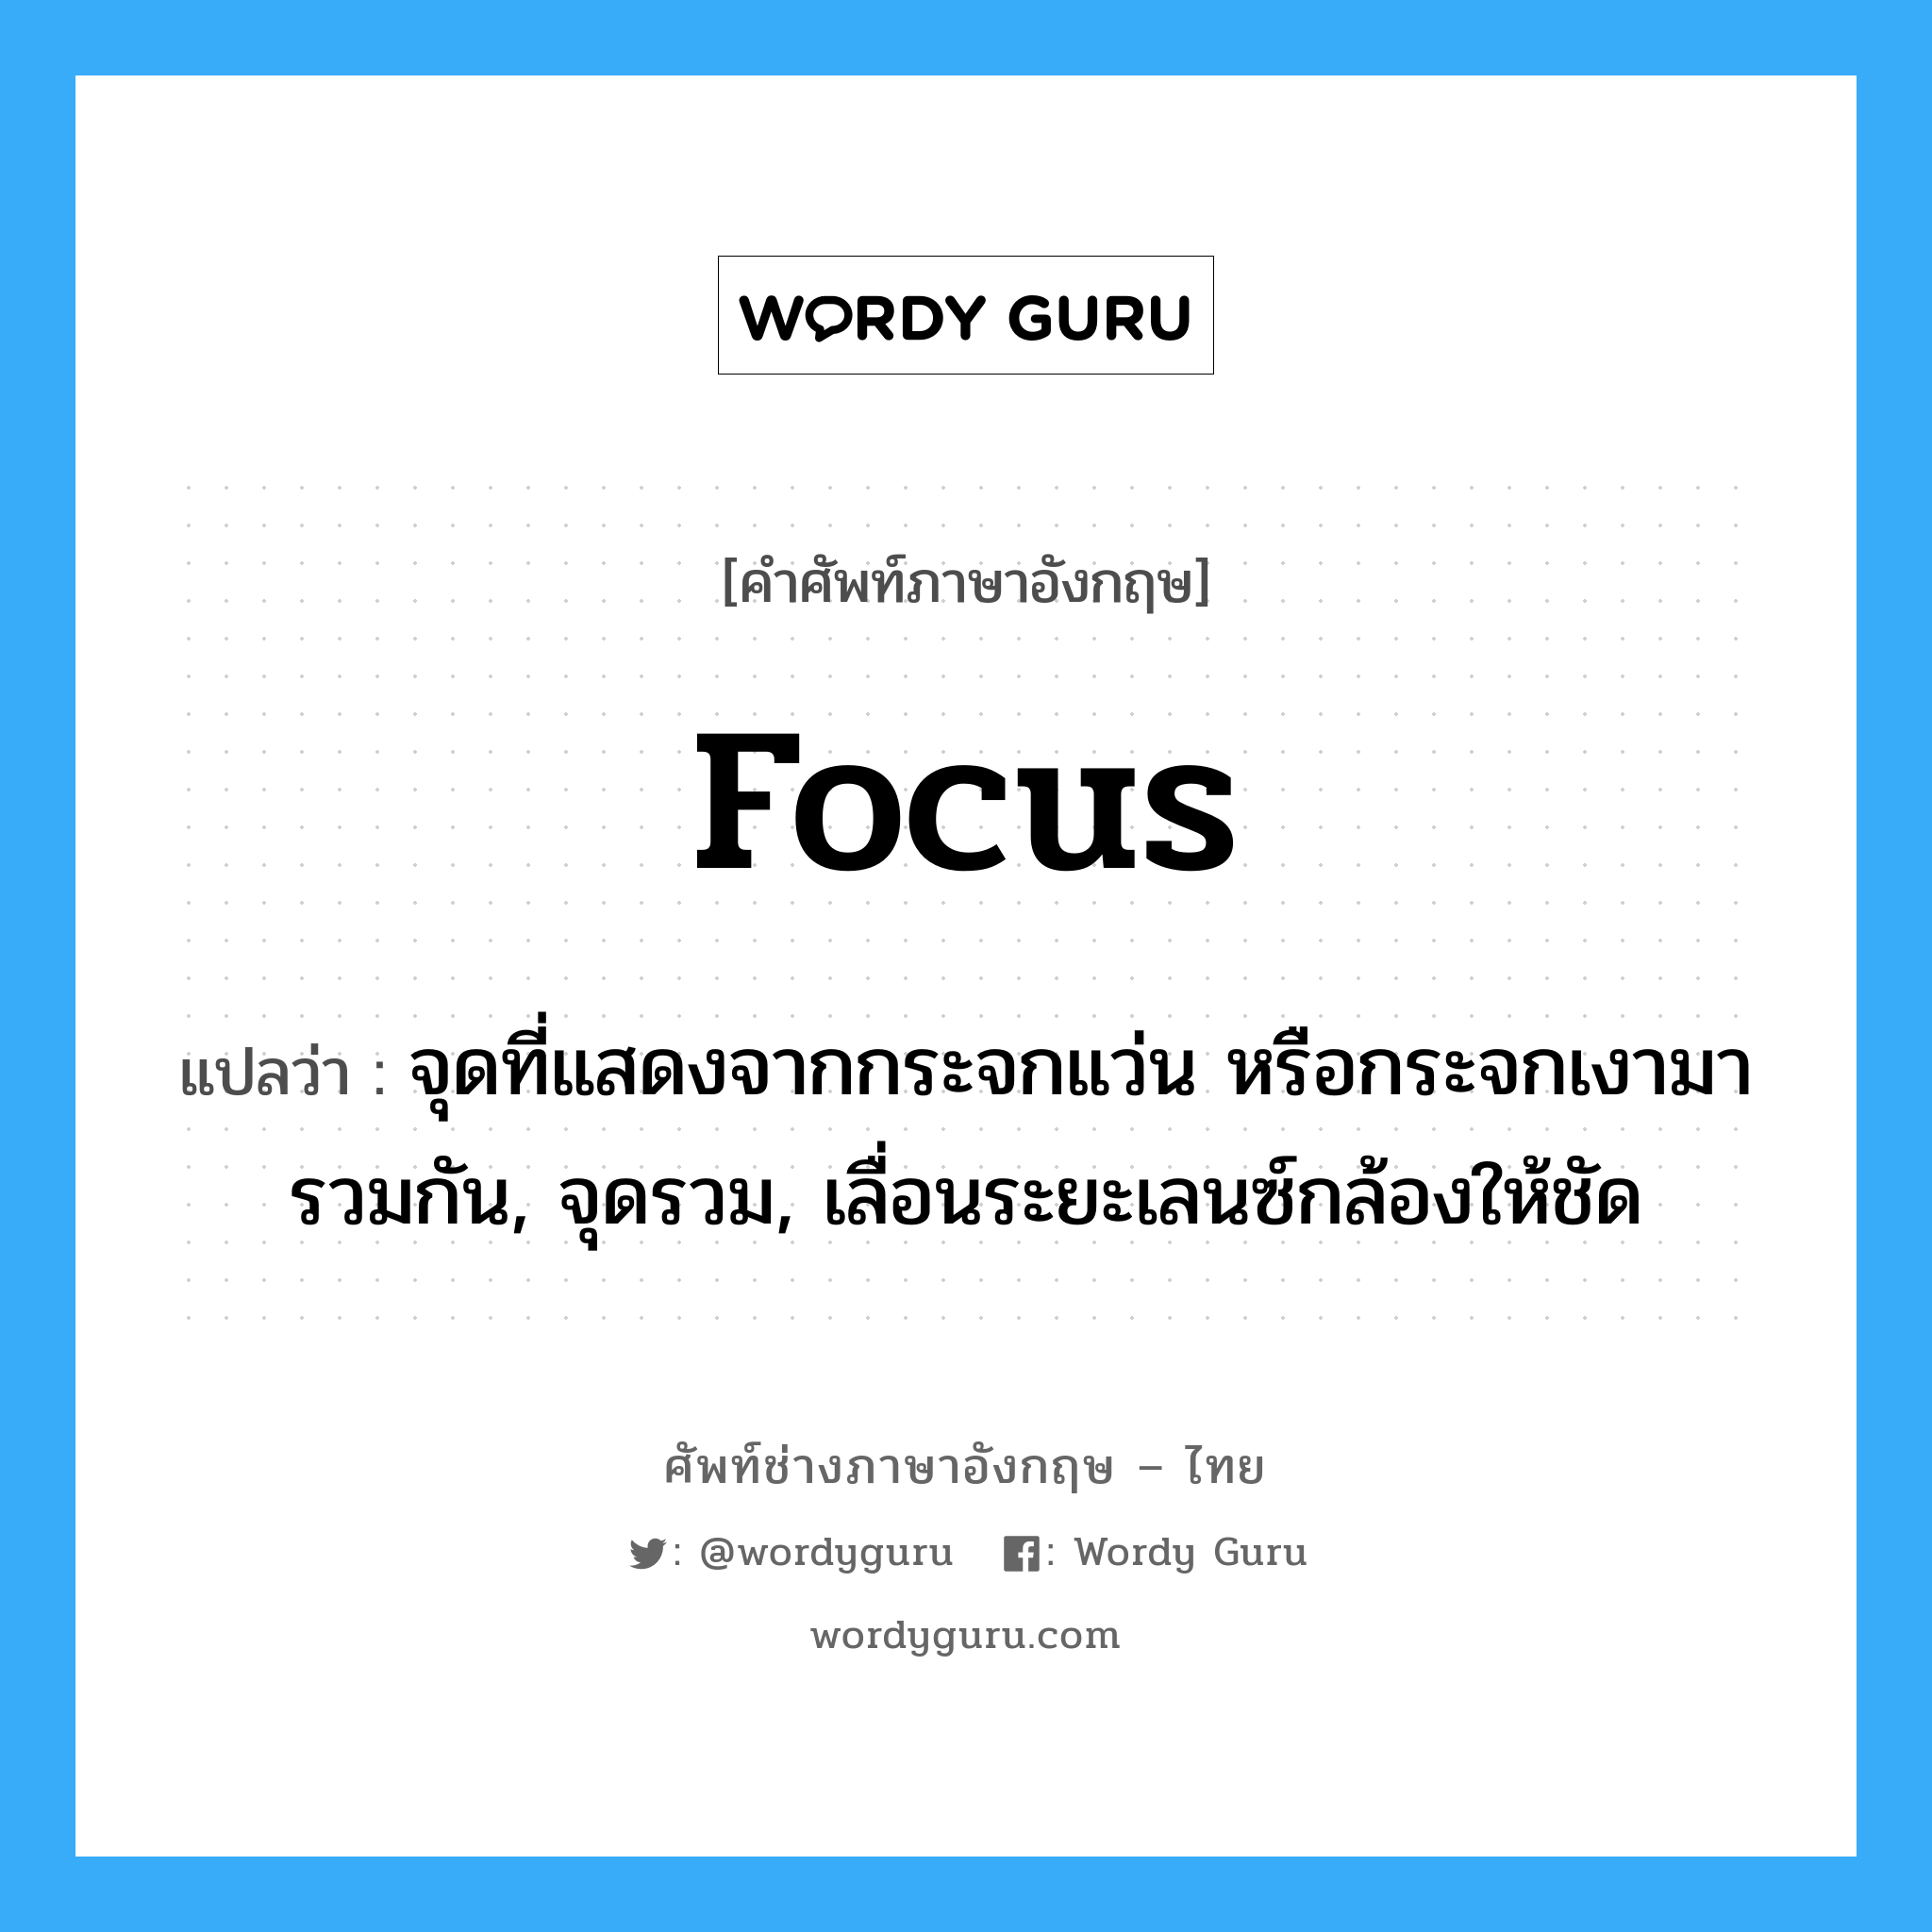 focus แปลว่า?, คำศัพท์ช่างภาษาอังกฤษ - ไทย focus คำศัพท์ภาษาอังกฤษ focus แปลว่า จุดที่แสดงจากกระจกแว่น หรือกระจกเงามารวมกัน, จุดรวม, เลื่อนระยะเลนซ์กล้องให้ชัด